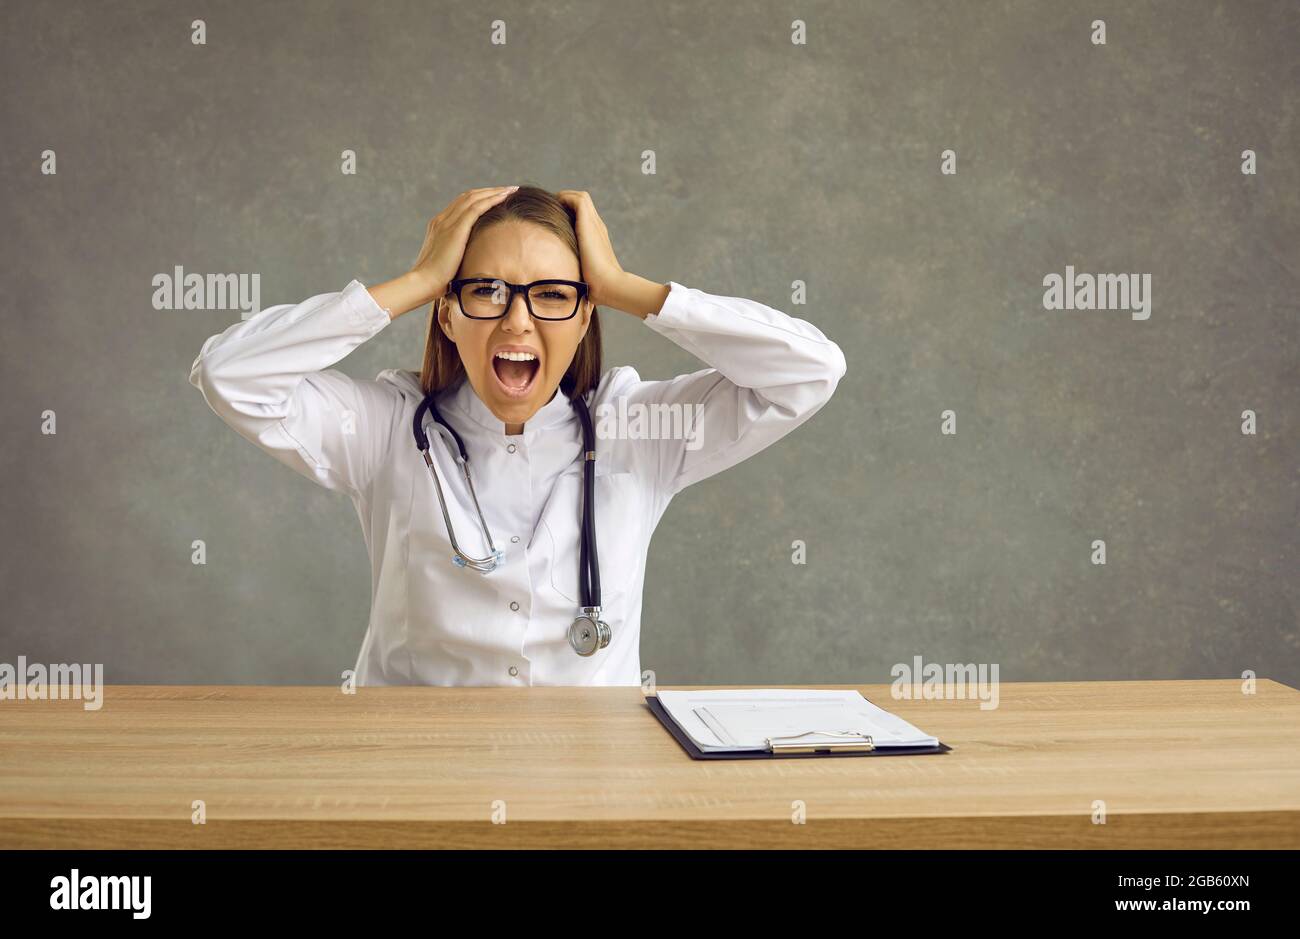 Eine Ärztin, die die Gefühle von Frustration und Depression spürt, schreit laut, während sie ihren Kopf hält. Stockfoto